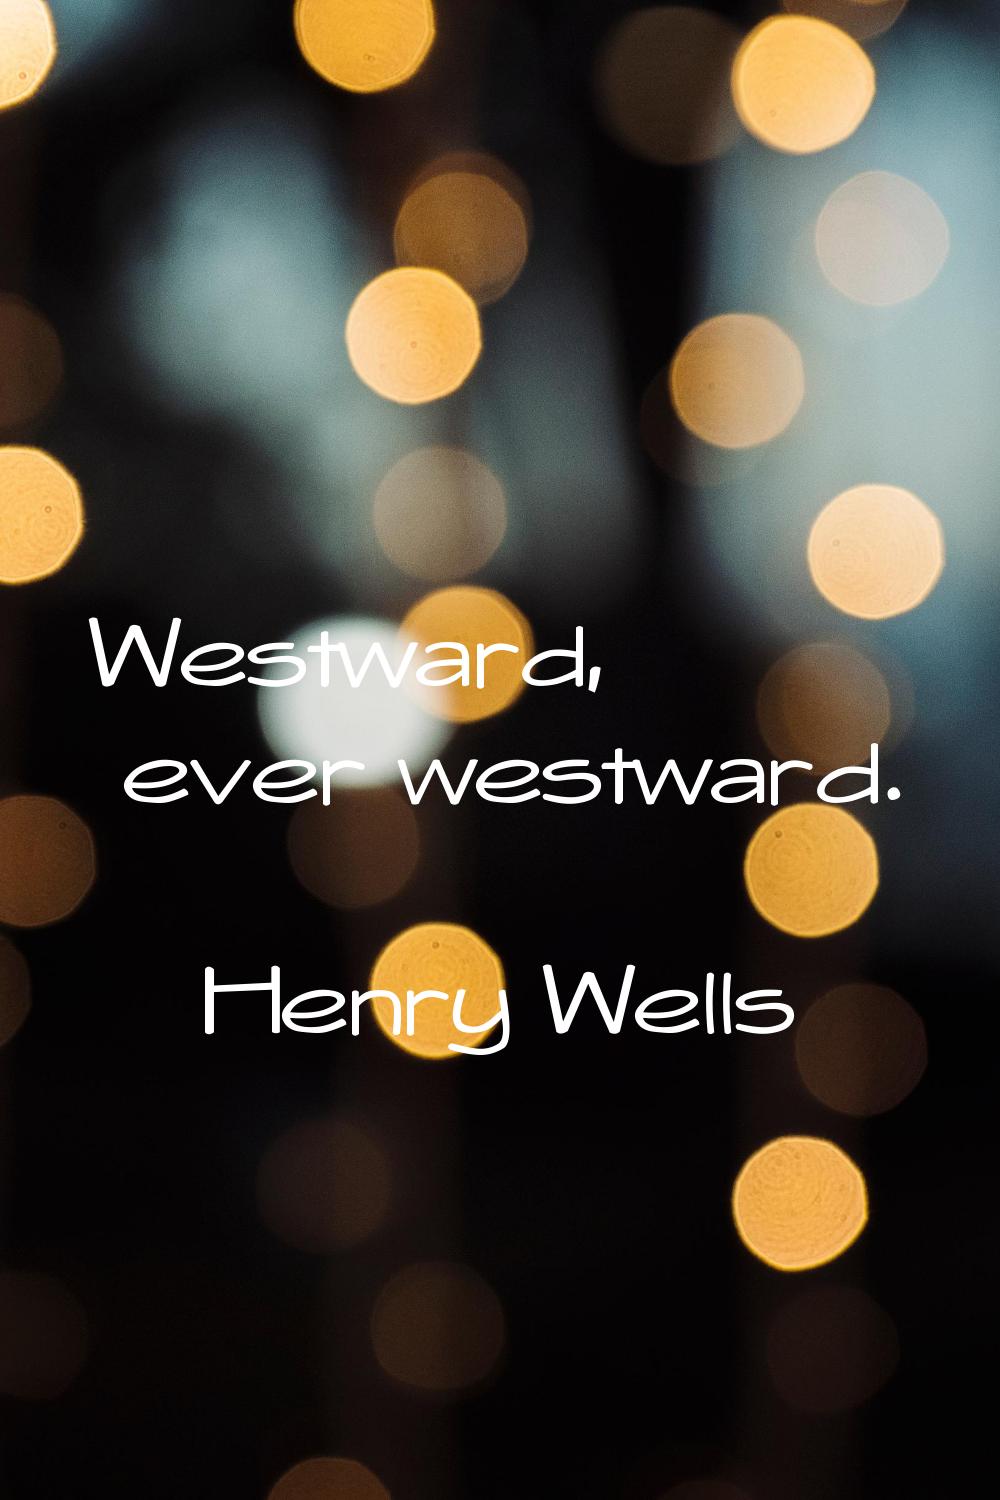 Westward, ever westward.